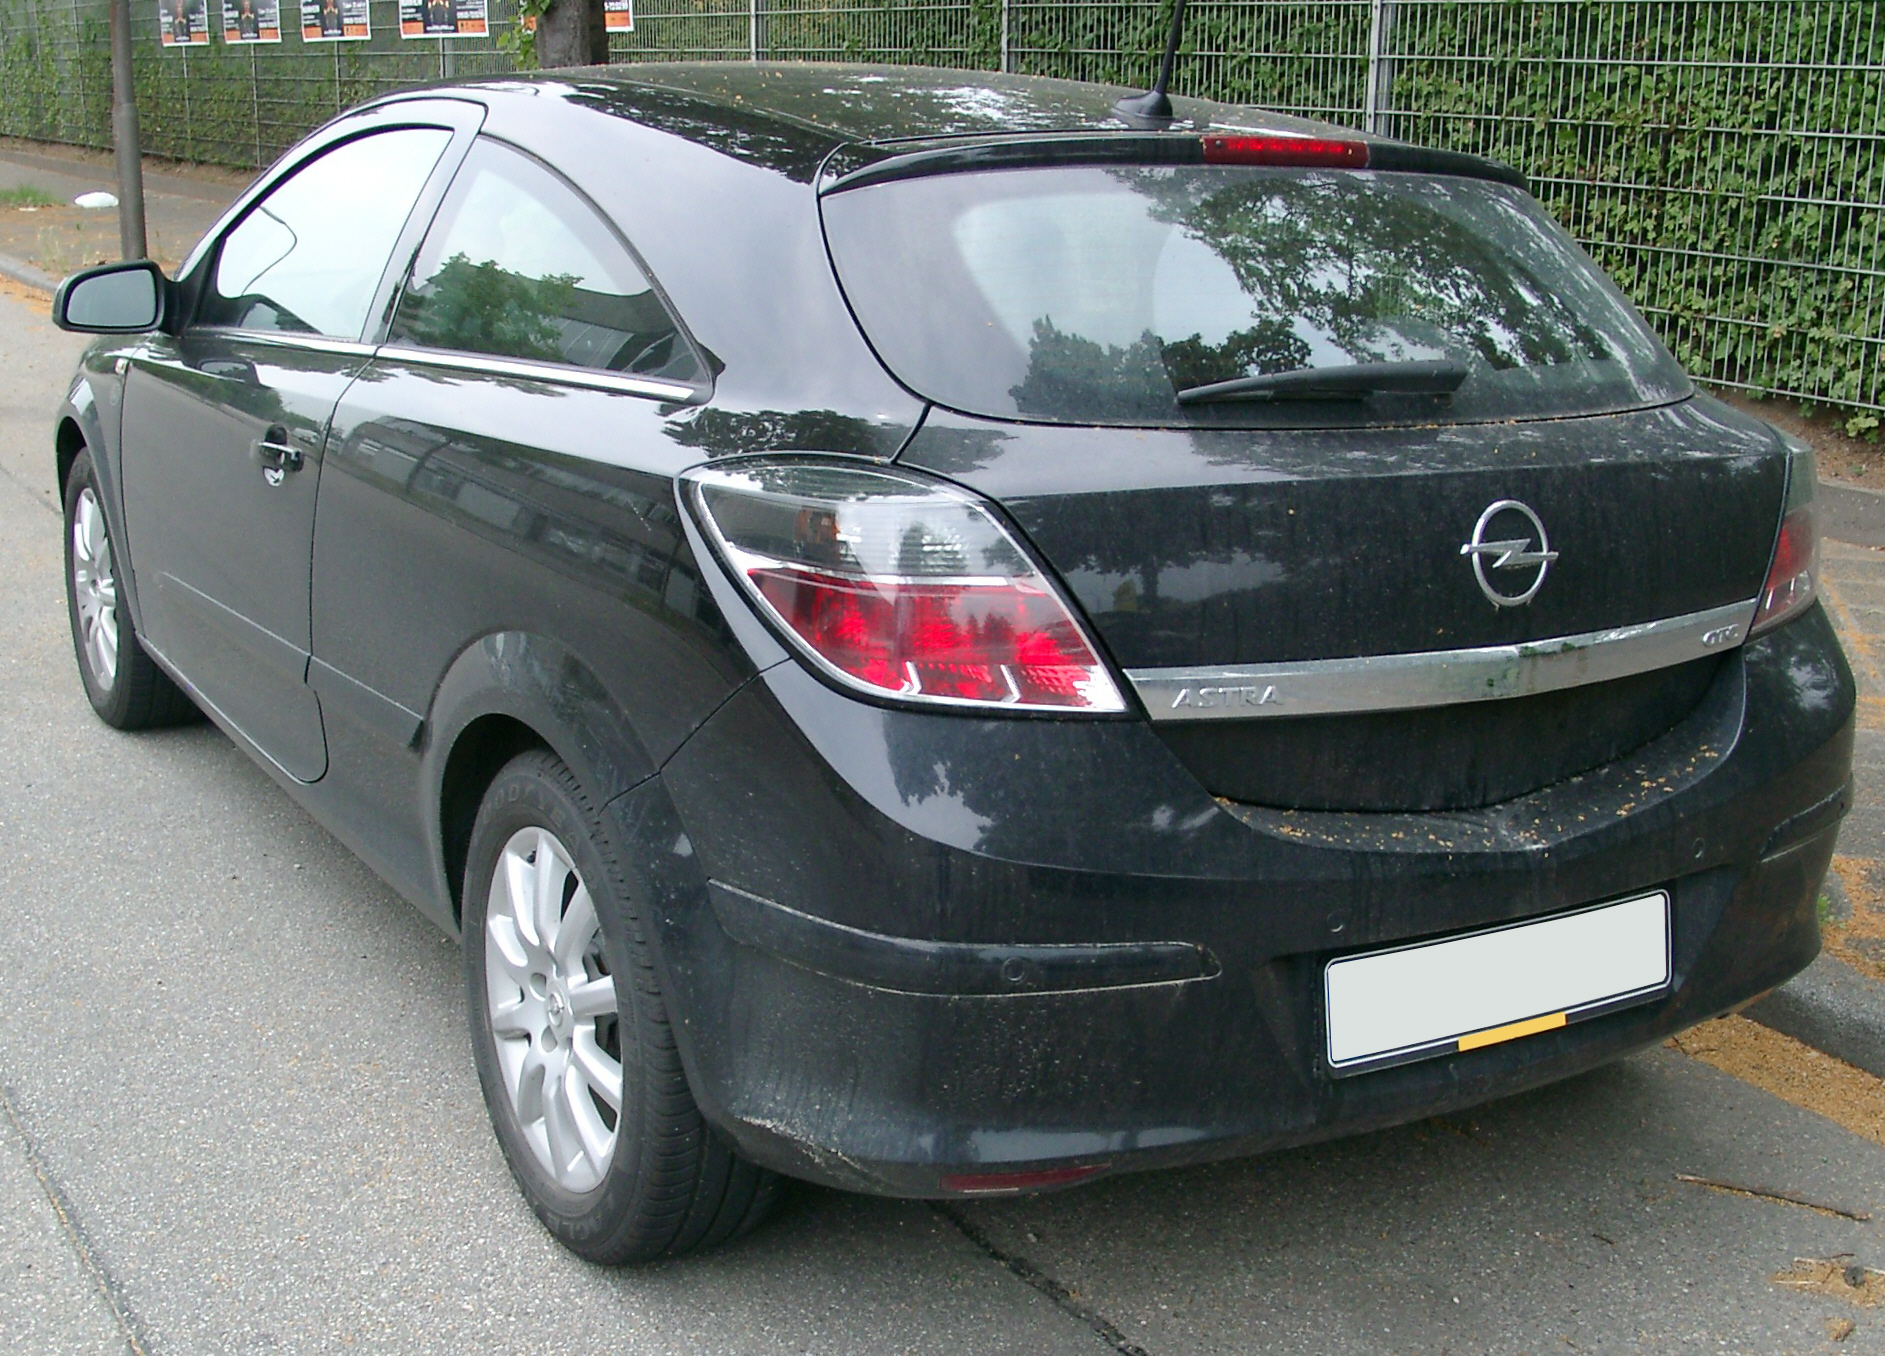 Dossier: Opel Astra GTC arrière 20070609.jpg - Wikimedia Commons